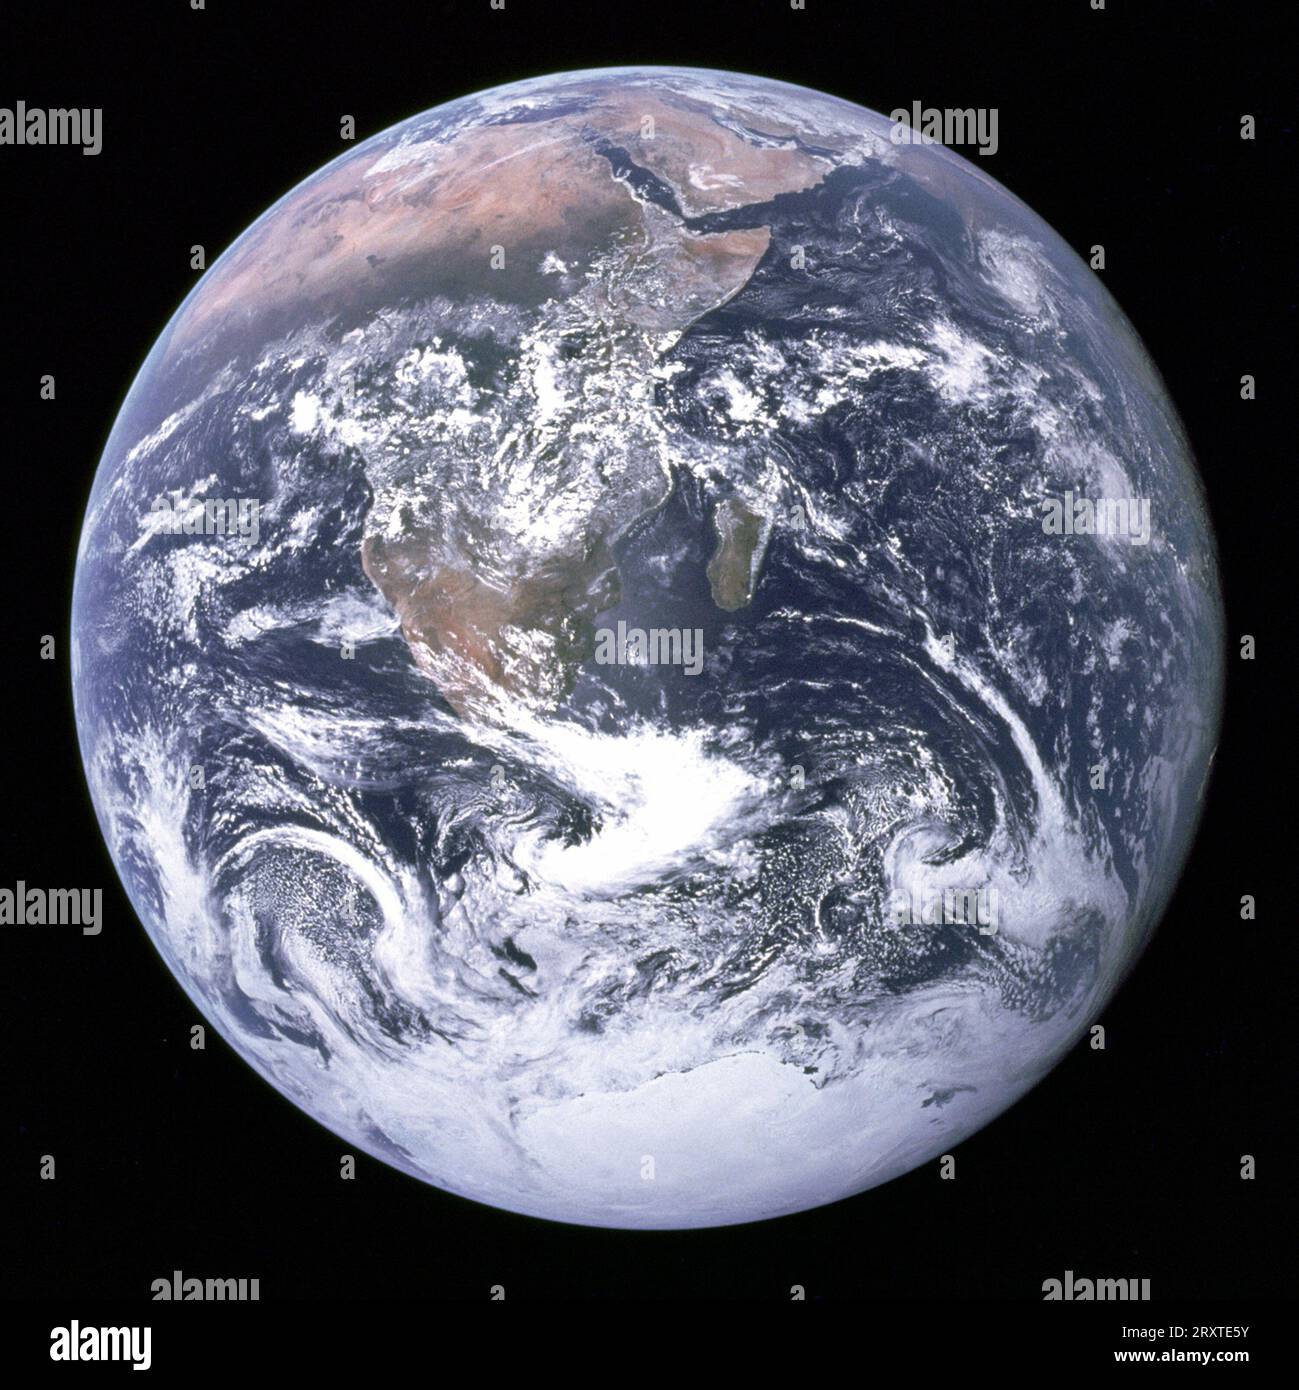 Le marbre bleu est une photographie de la Terre prise le 7 décembre 1972, à une distance d'environ 33 000 kilomètres (21 000 miles) de la surface de la planète. Prise par l'équipage de la sonde Apollo 17 sur son chemin vers la Lune, elle est l'une des images les plus reproduites de l'histoire Banque D'Images